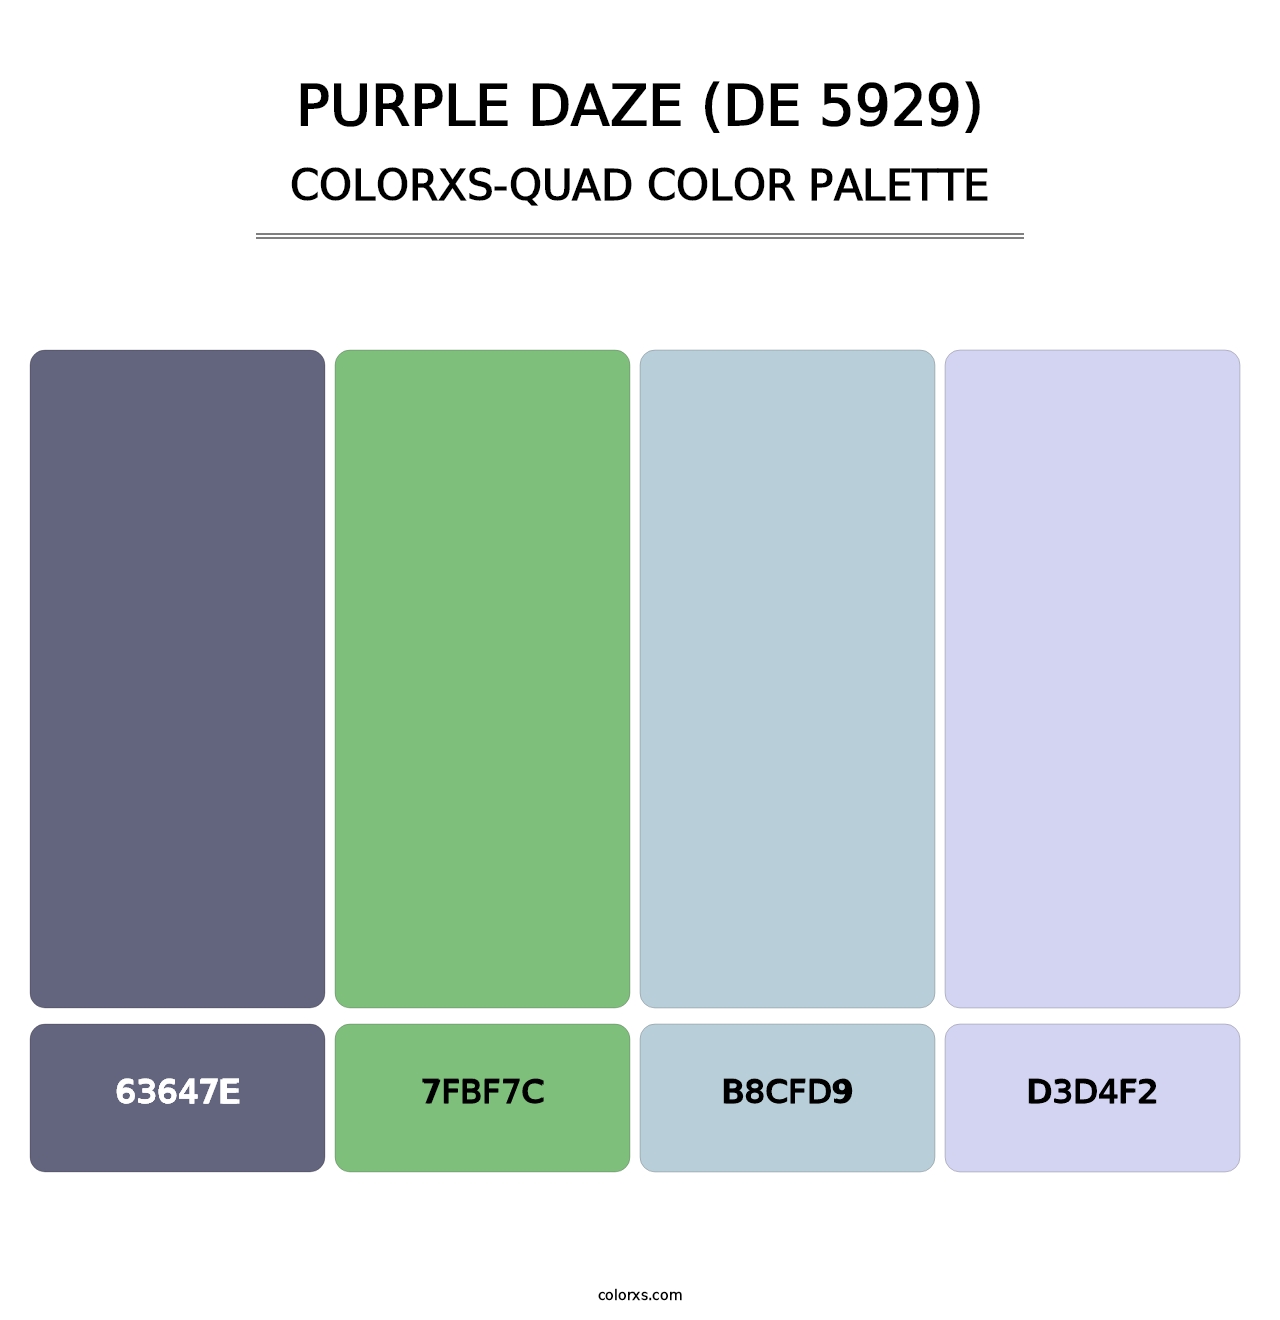 Purple Daze (DE 5929) - Colorxs Quad Palette